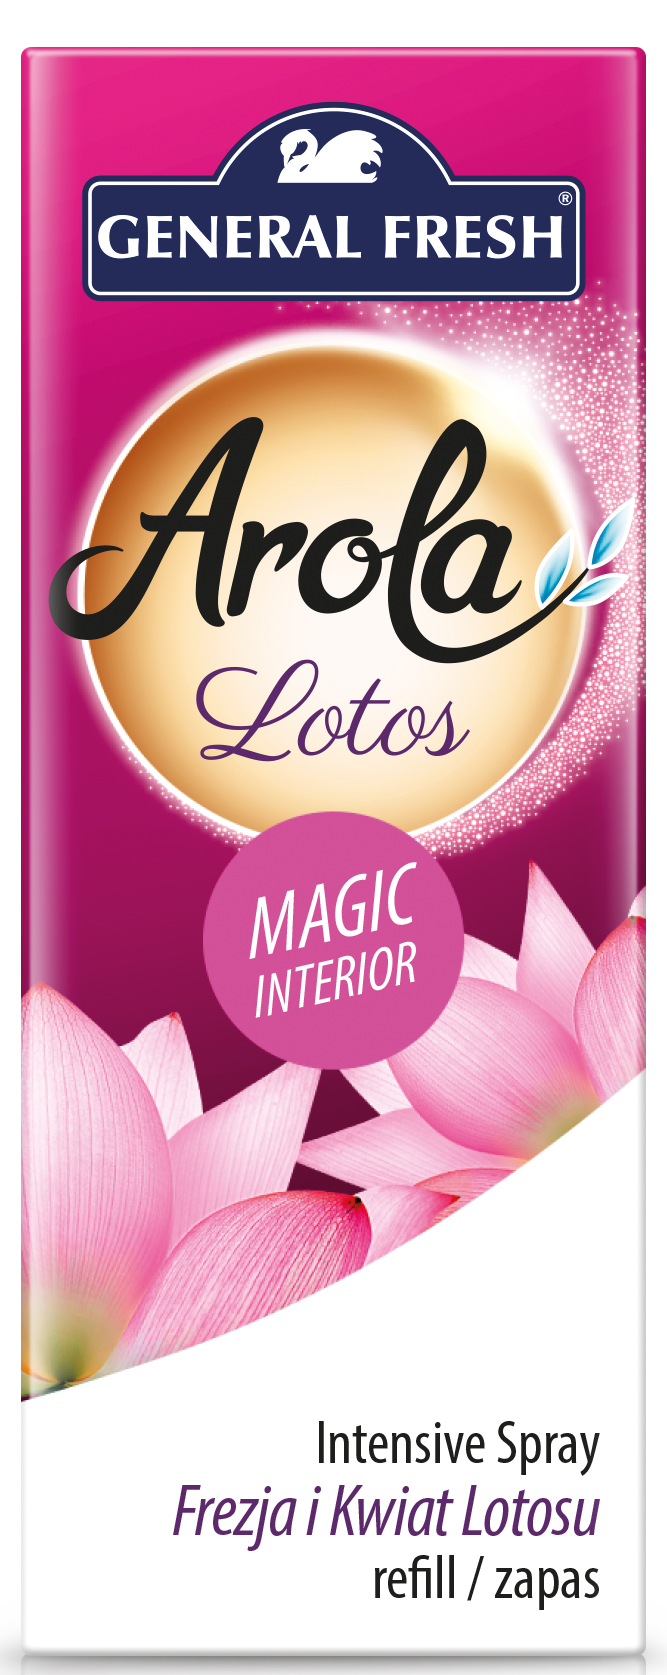 gf-arola-magic-interior-zapas-lotos-wiz_1884.png